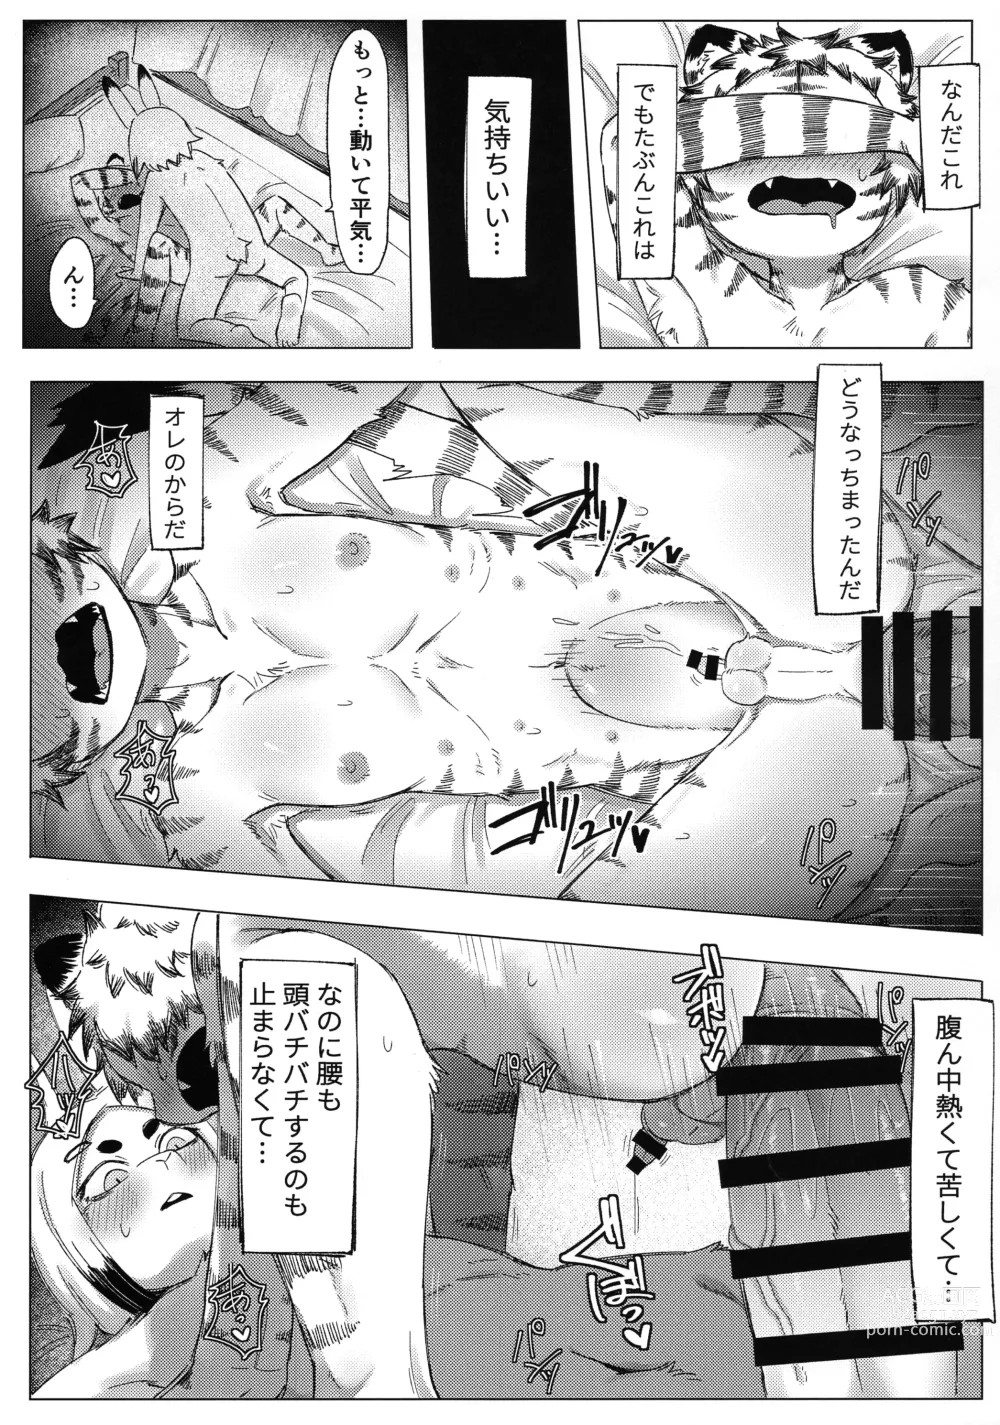 Page 19 of doujinshi Matsuri no Zenjitsu